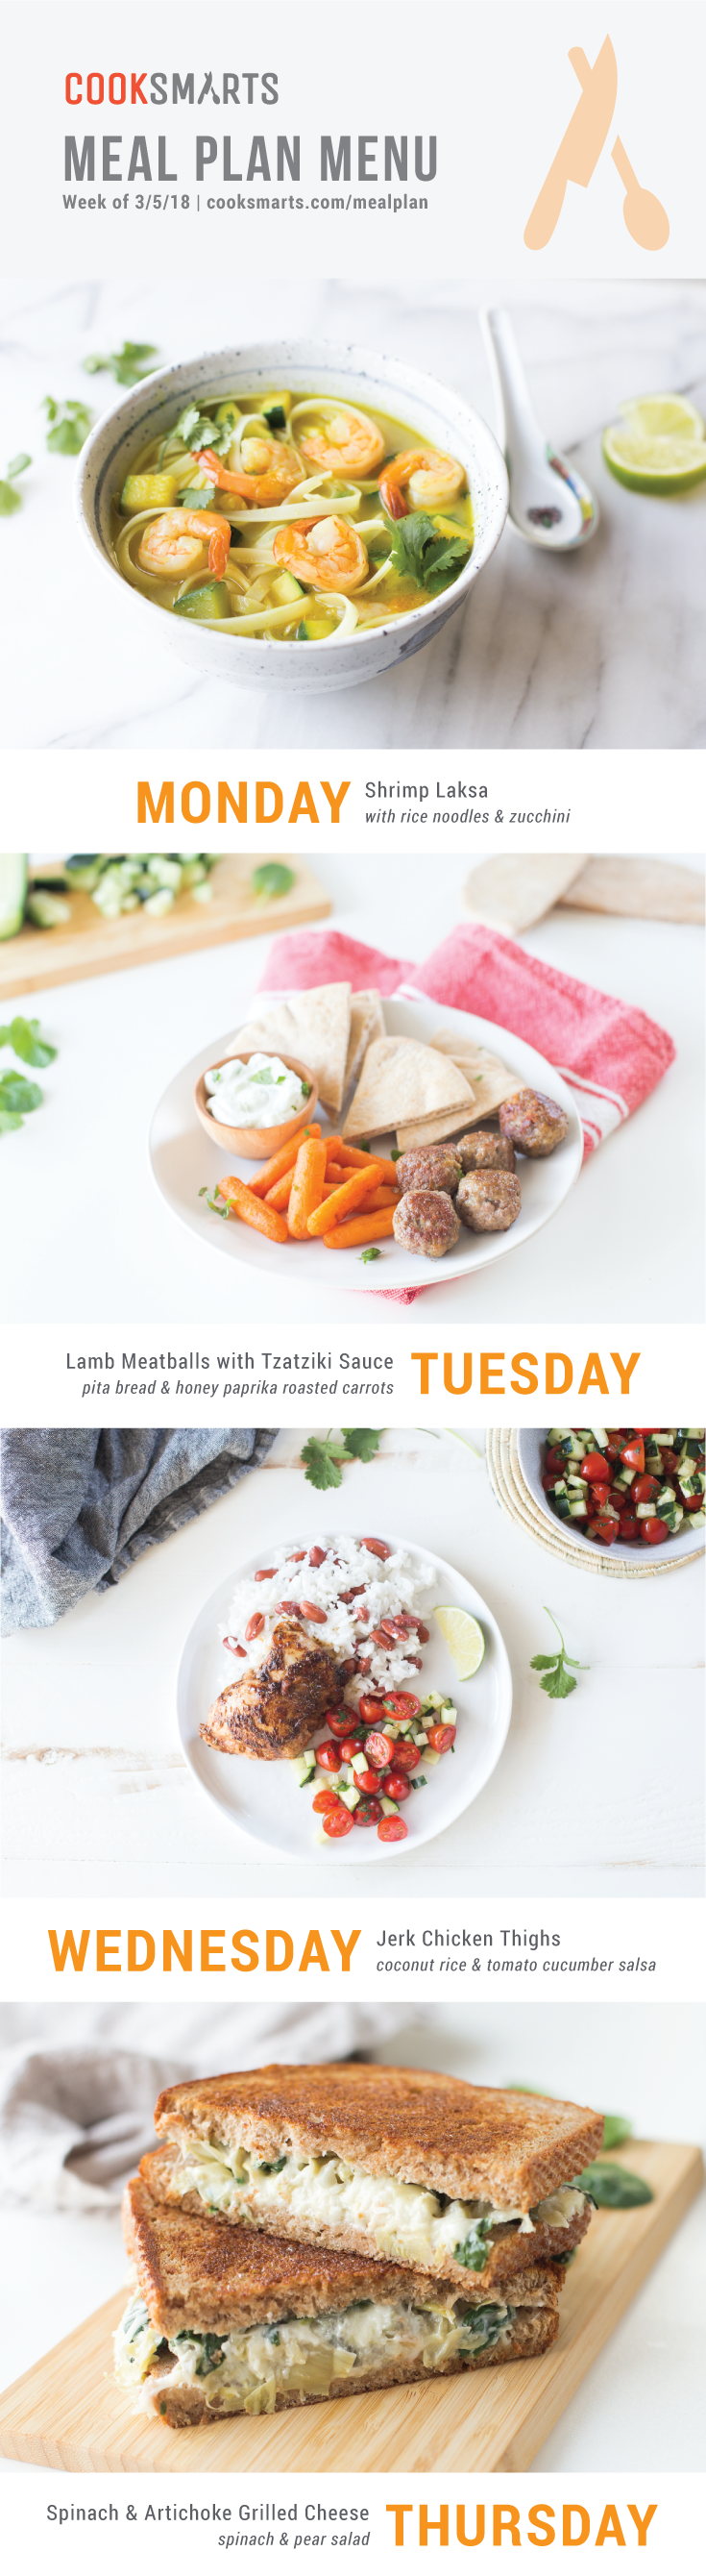 Weekly Meal Plan Menu | Week of 3/5/18 via @cooksmarts